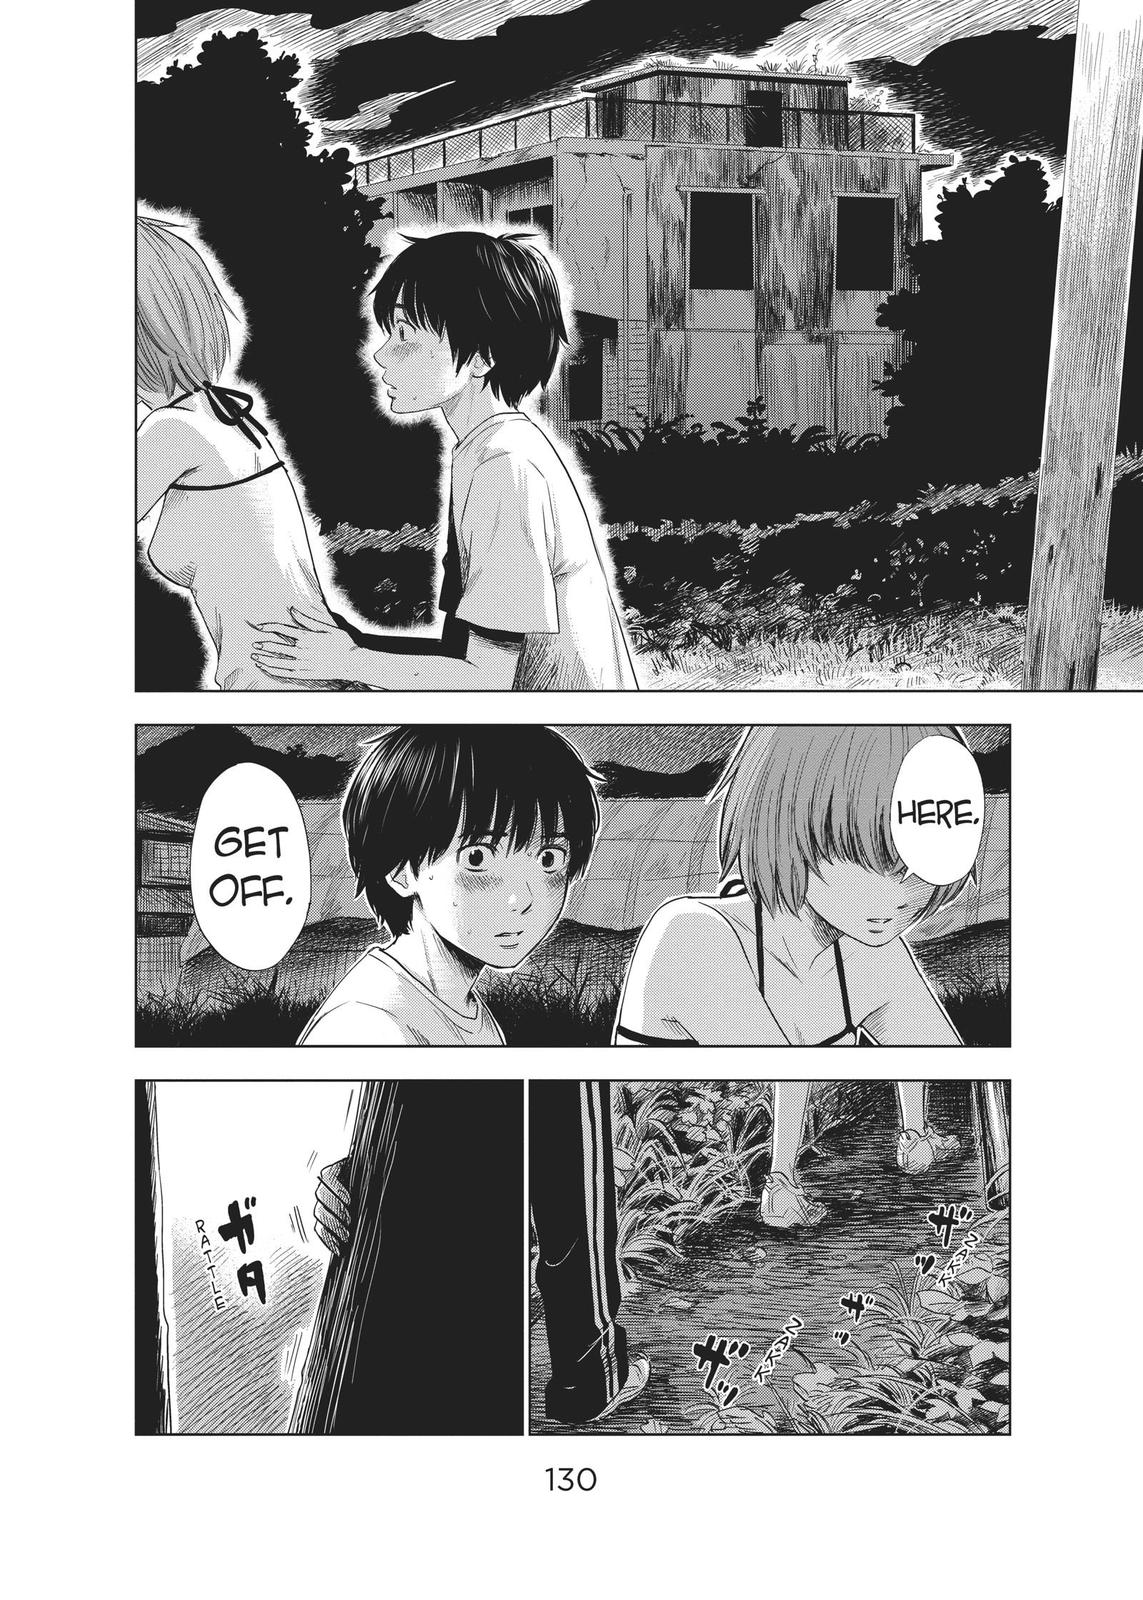 can someone explain the ending to me (manga: aku no hana) : r/manga